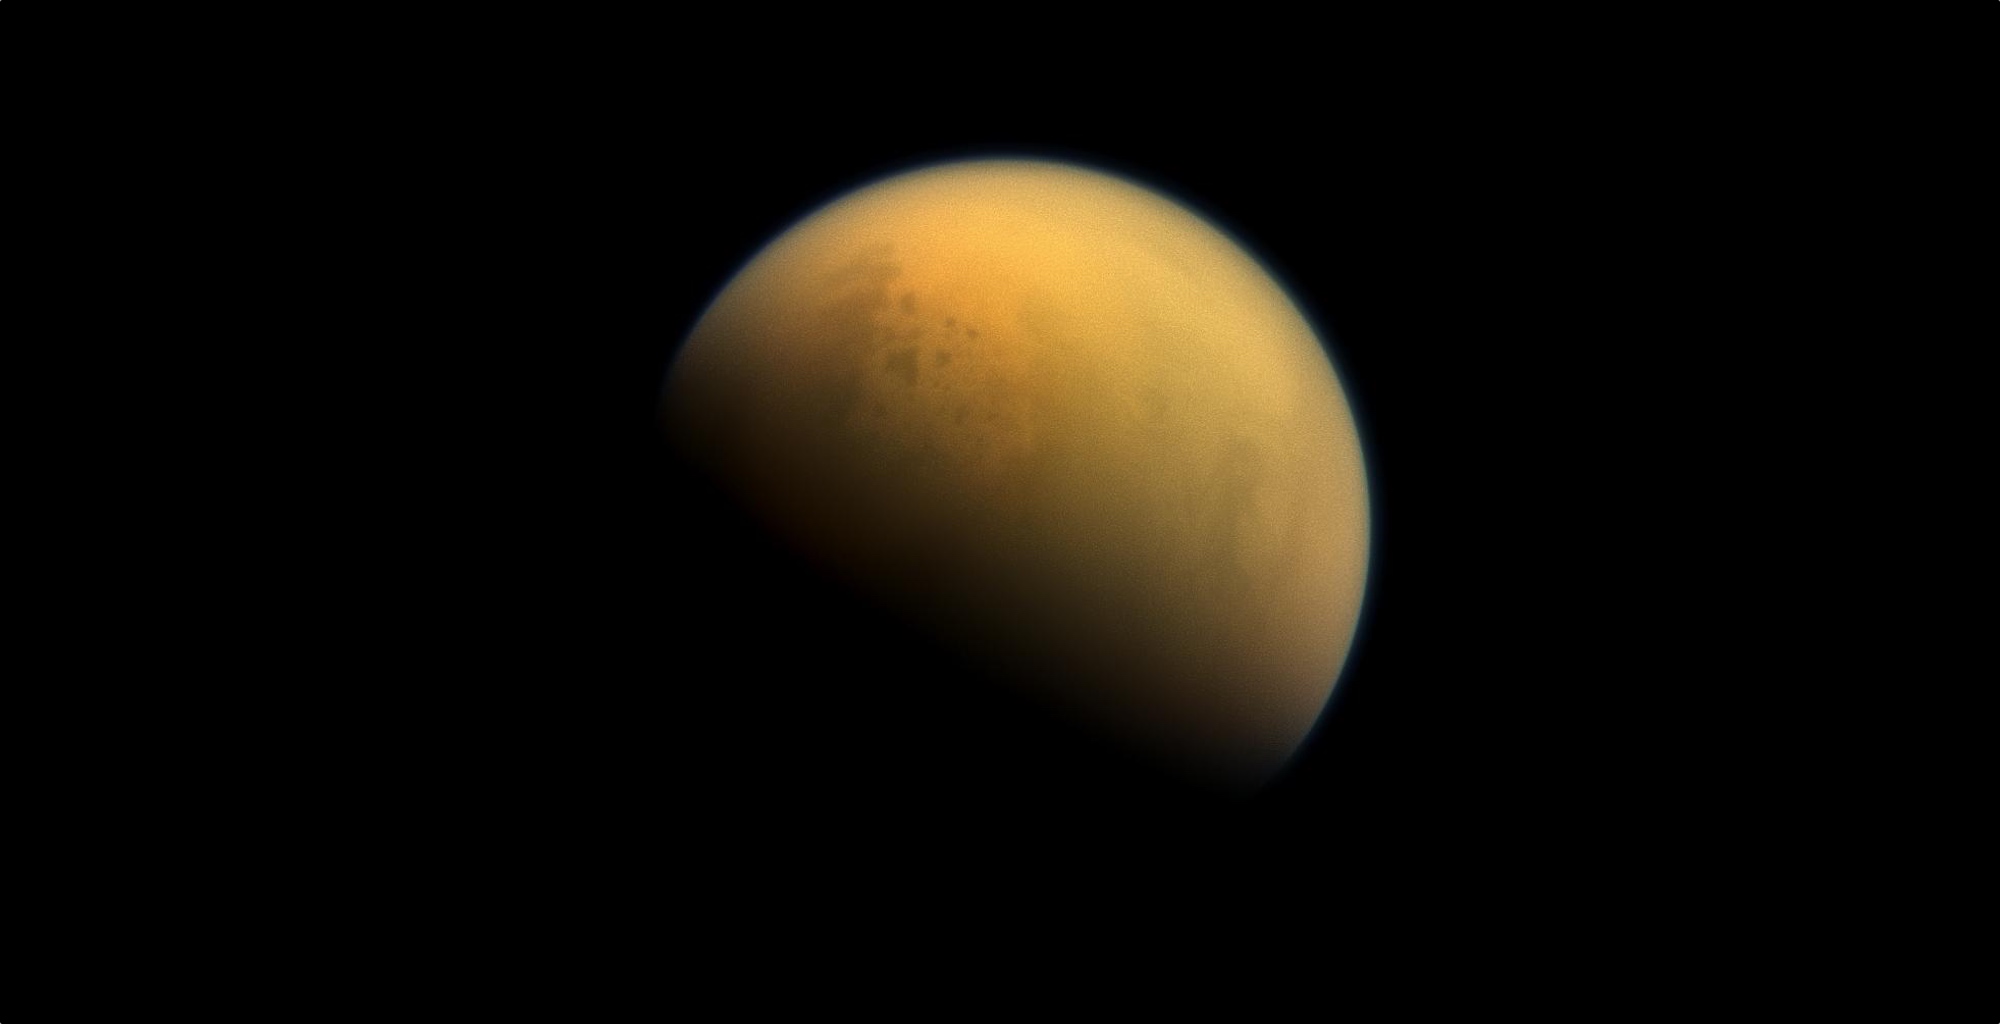 Une molécule prébiotique a été découverte dans l'atmosphère de Titan. Ici, l’atmosphère dense et brumeuse de Titan photographiée par la sonde Cassini. © Nasa, JPL-Caltech, Space Science Institute